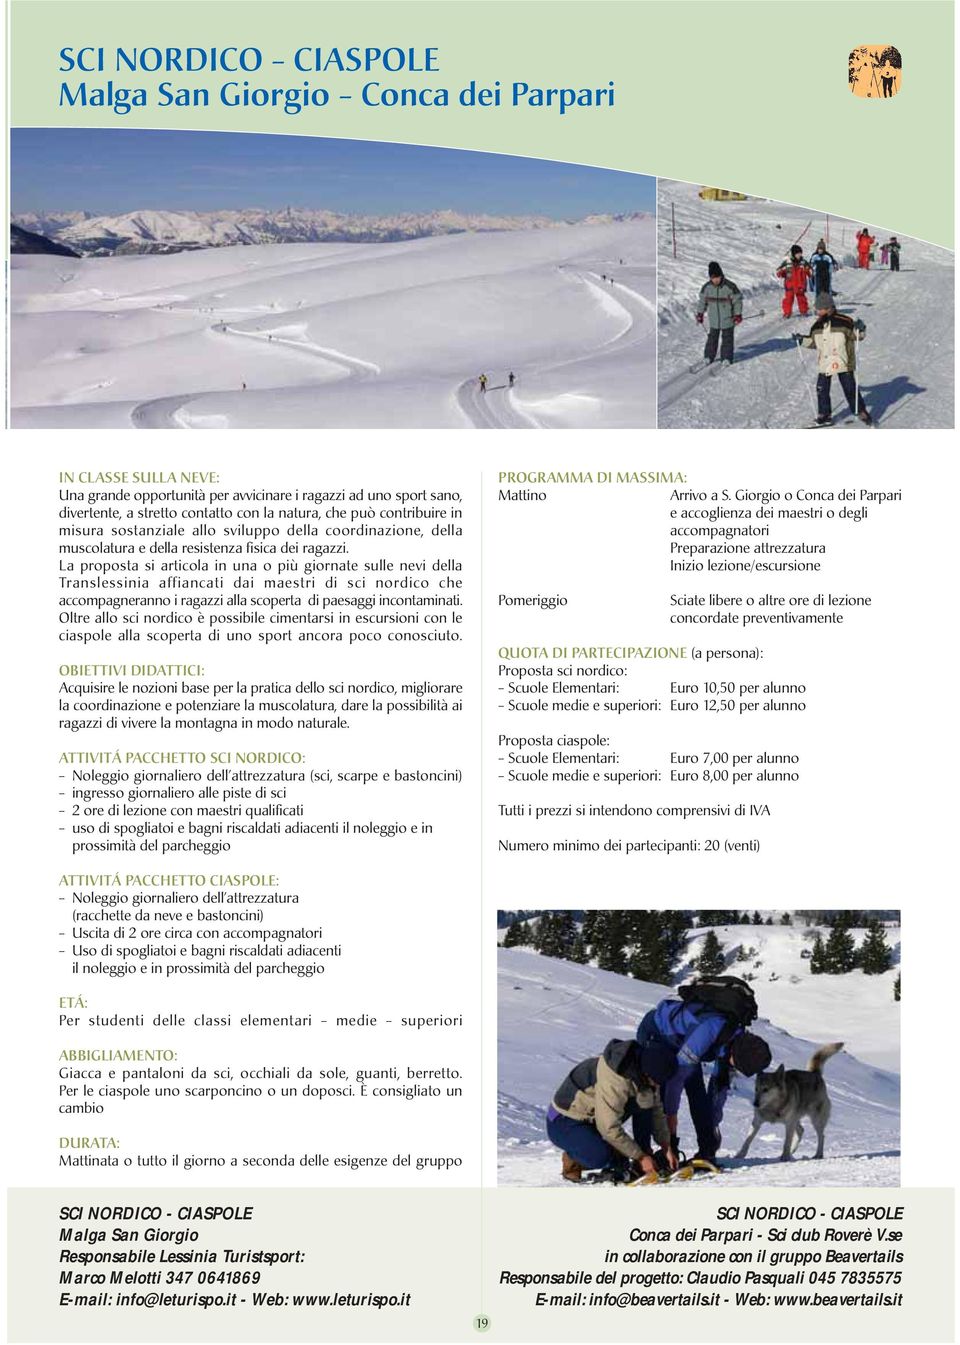 La proposta si articola in una o più giornate sulle nevi della Translessinia affiancati dai maestri di sci nordico che accompagneranno i ragazzi alla scoperta di paesaggi incontaminati.